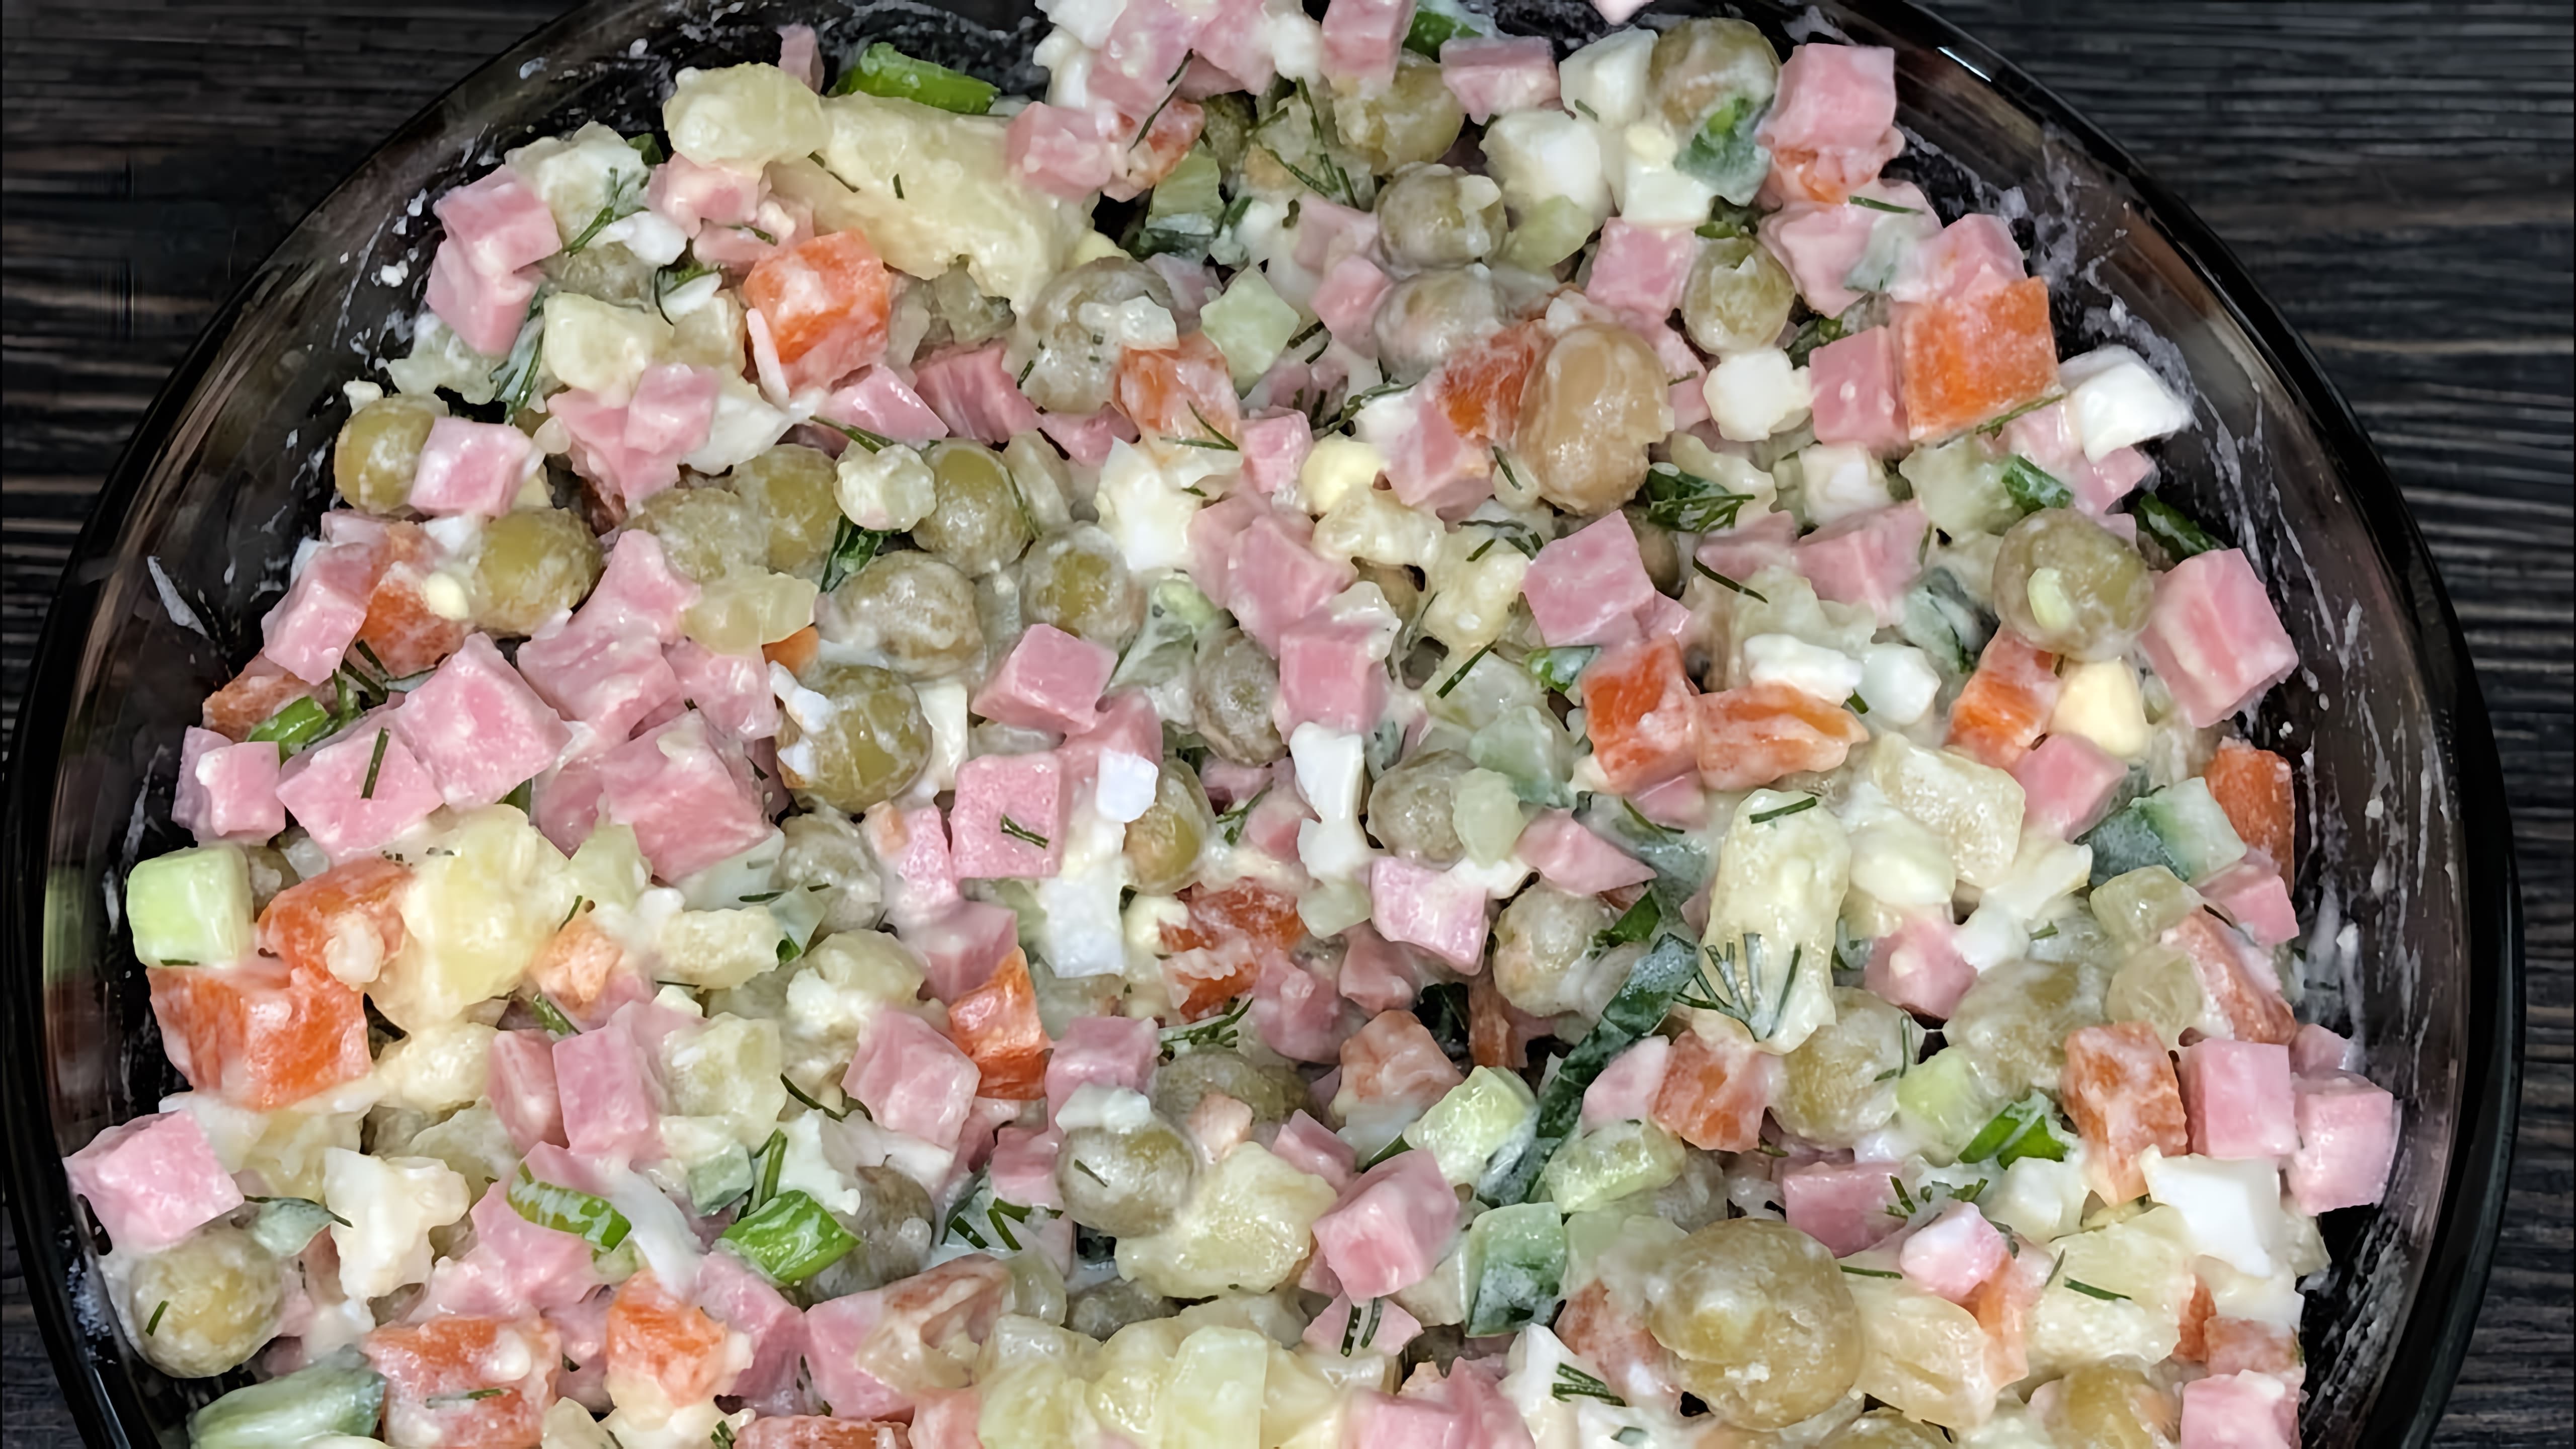 В этом видео демонстрируется процесс приготовления салата Оливье с колбасой и свежим огурцом